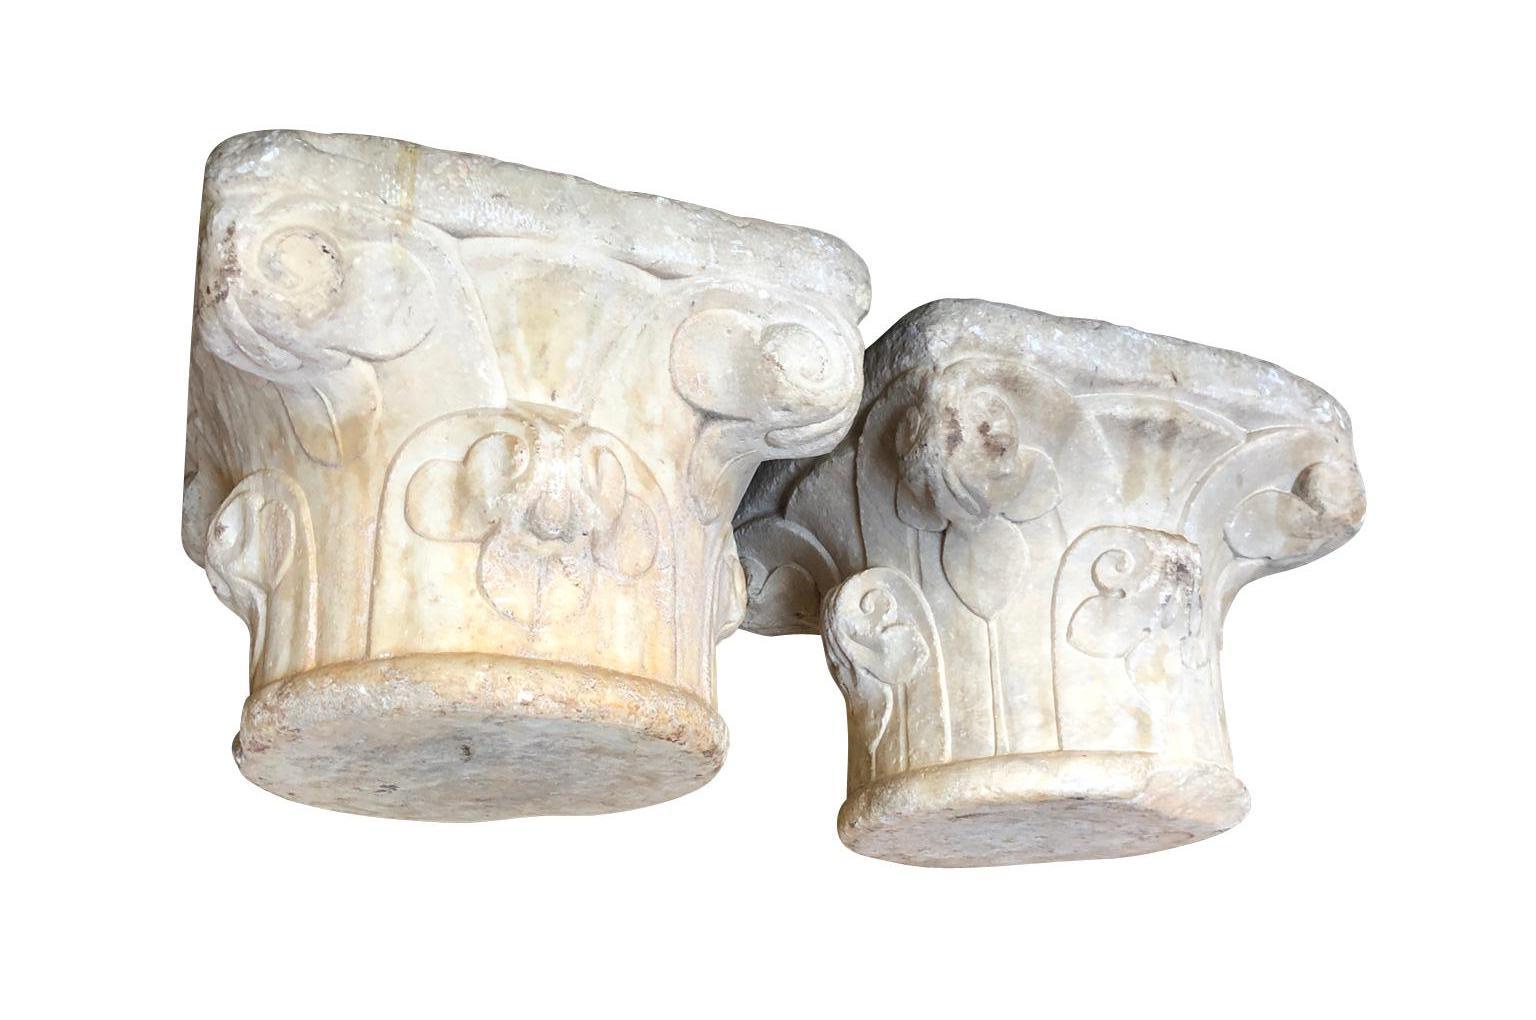 Ein sensationelles Paar Capitales Sevillanos aus dem 16. Jahrhundert, das in Italien aus Carrara-Marmor gefertigt und dann nach Sevilla, Spanien, gebracht wurde. Wunderschöne architektonische Elemente, die sich in eine atemberaubende Umgebung